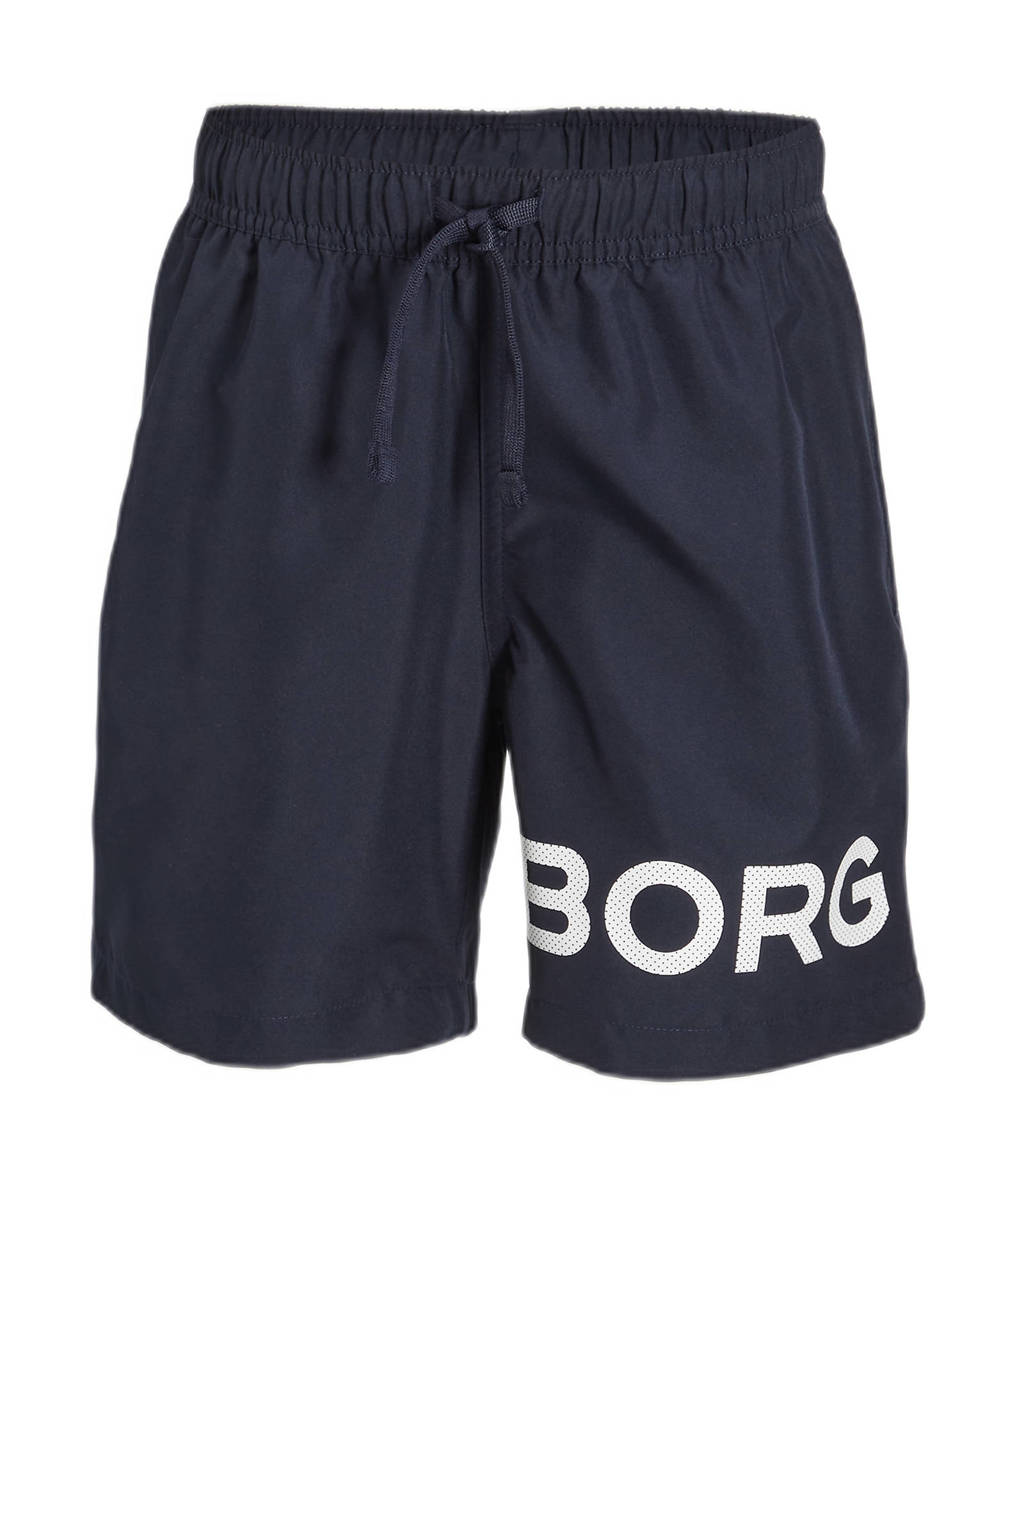 Oeganda Verrassend genoeg zingen Björn Borg zwemshort donkerblauw | kleertjes.com